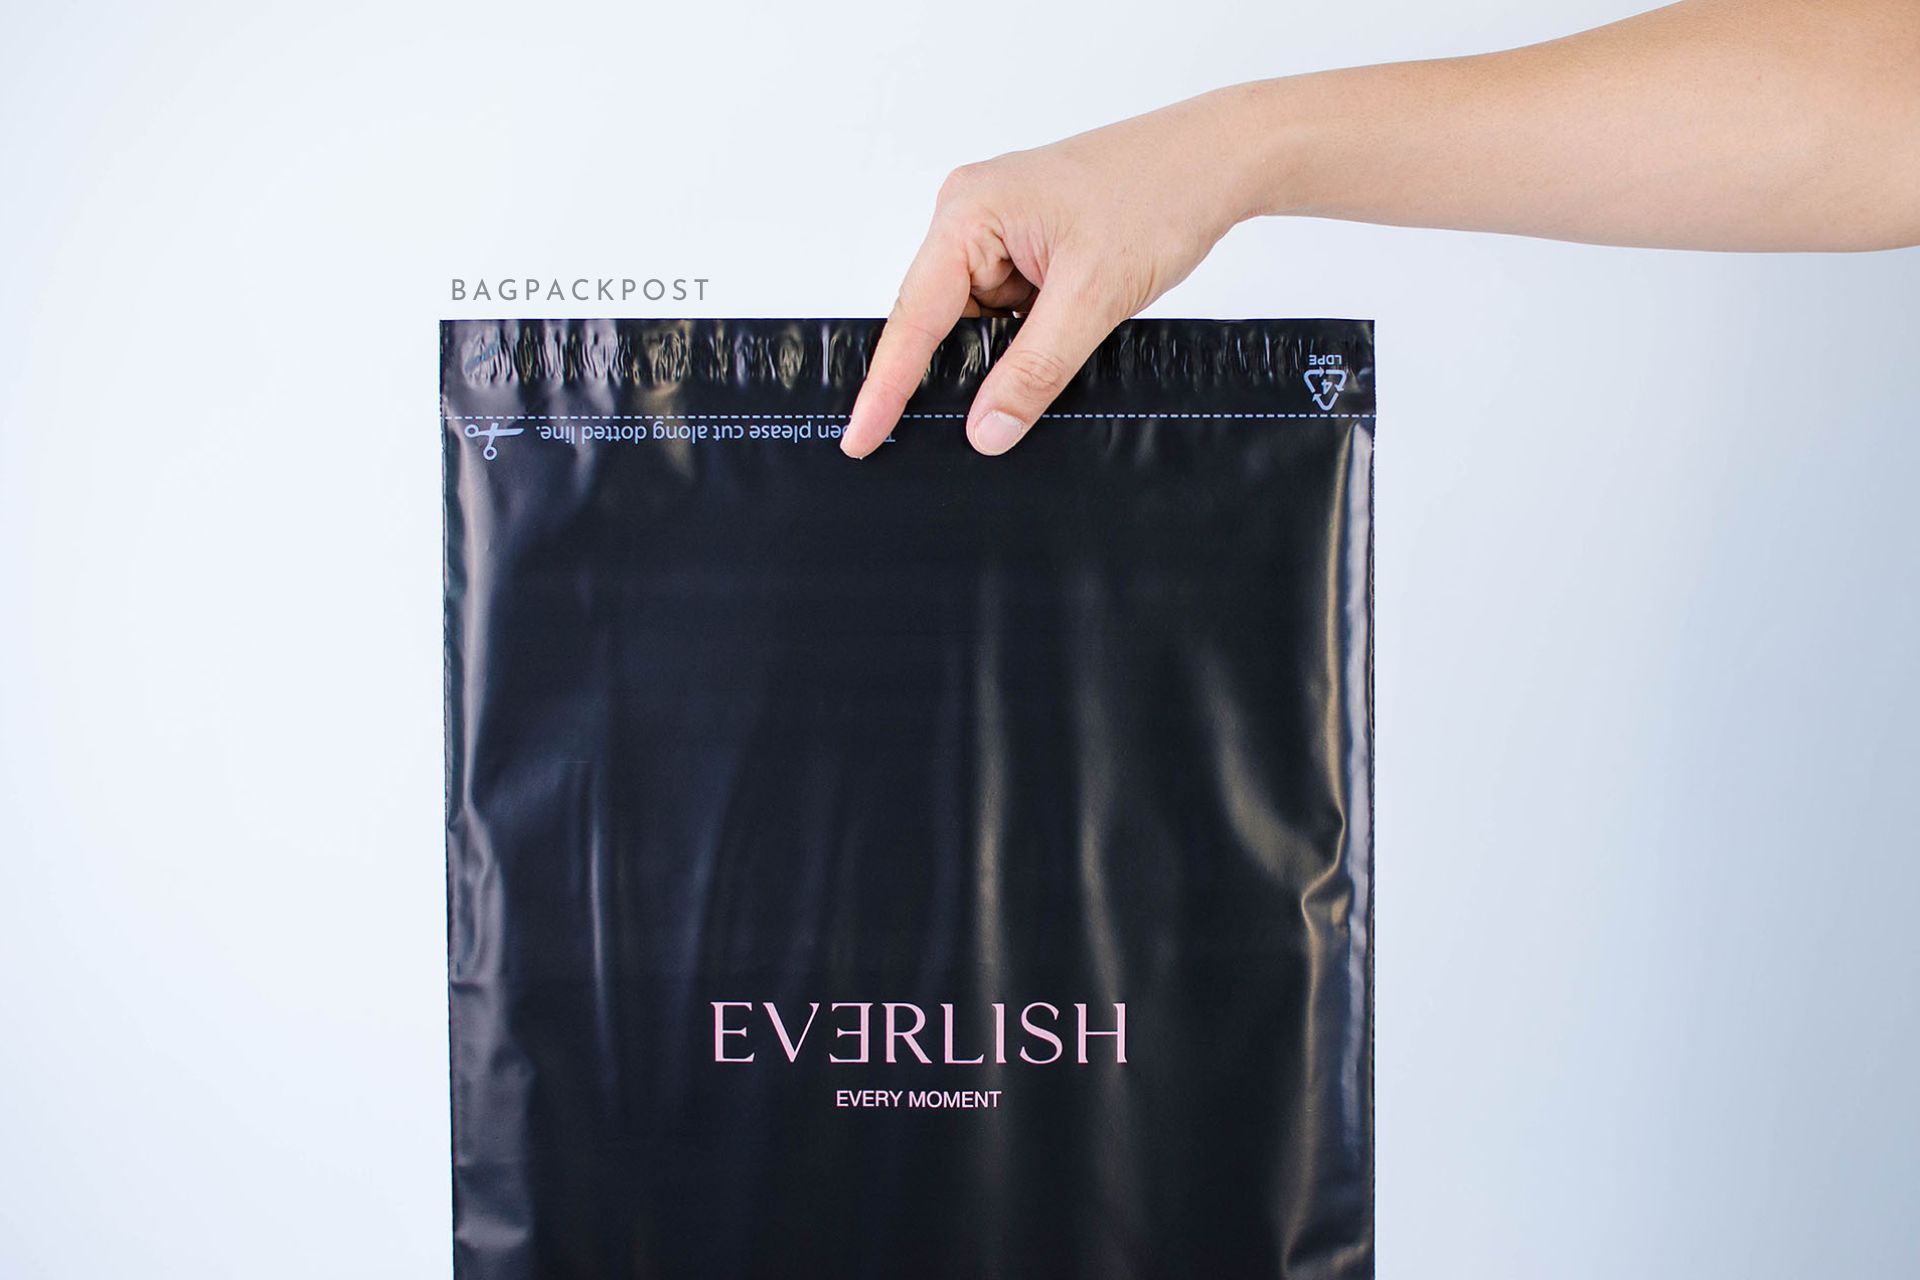 ผลิตถุงไปรษณีย์ ซองไปรษณีย์พิมพ์ลาย EVERLISH ซองไปรษณีย์สีดำ ถุงไปรษณีย์พิมพ์ลาย 2 BagPackPost